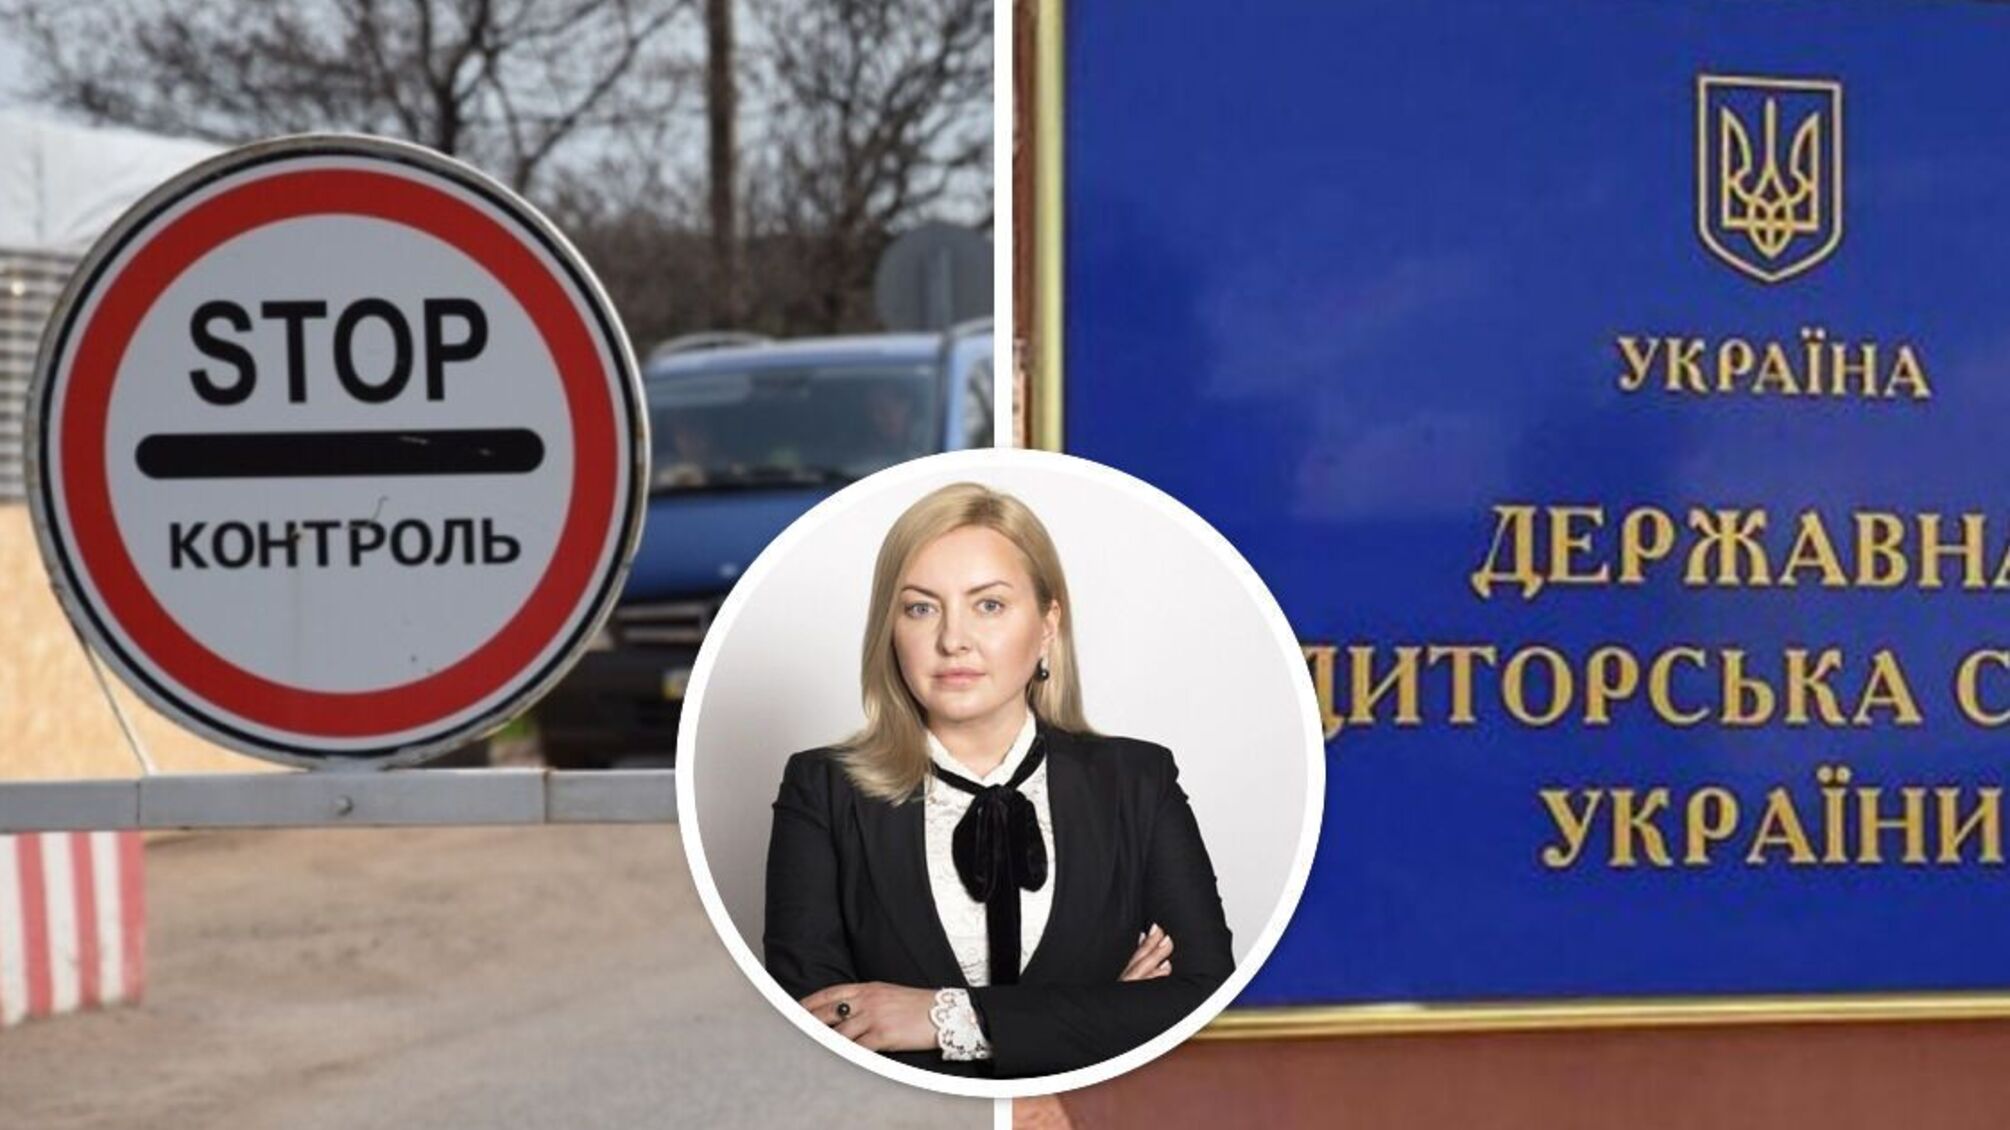 Татьяна Егорова-Луценко, вероятно, организовала выезд за границу руководителя подразделения Госаудитслужбы: журналисты обратились в ГБР